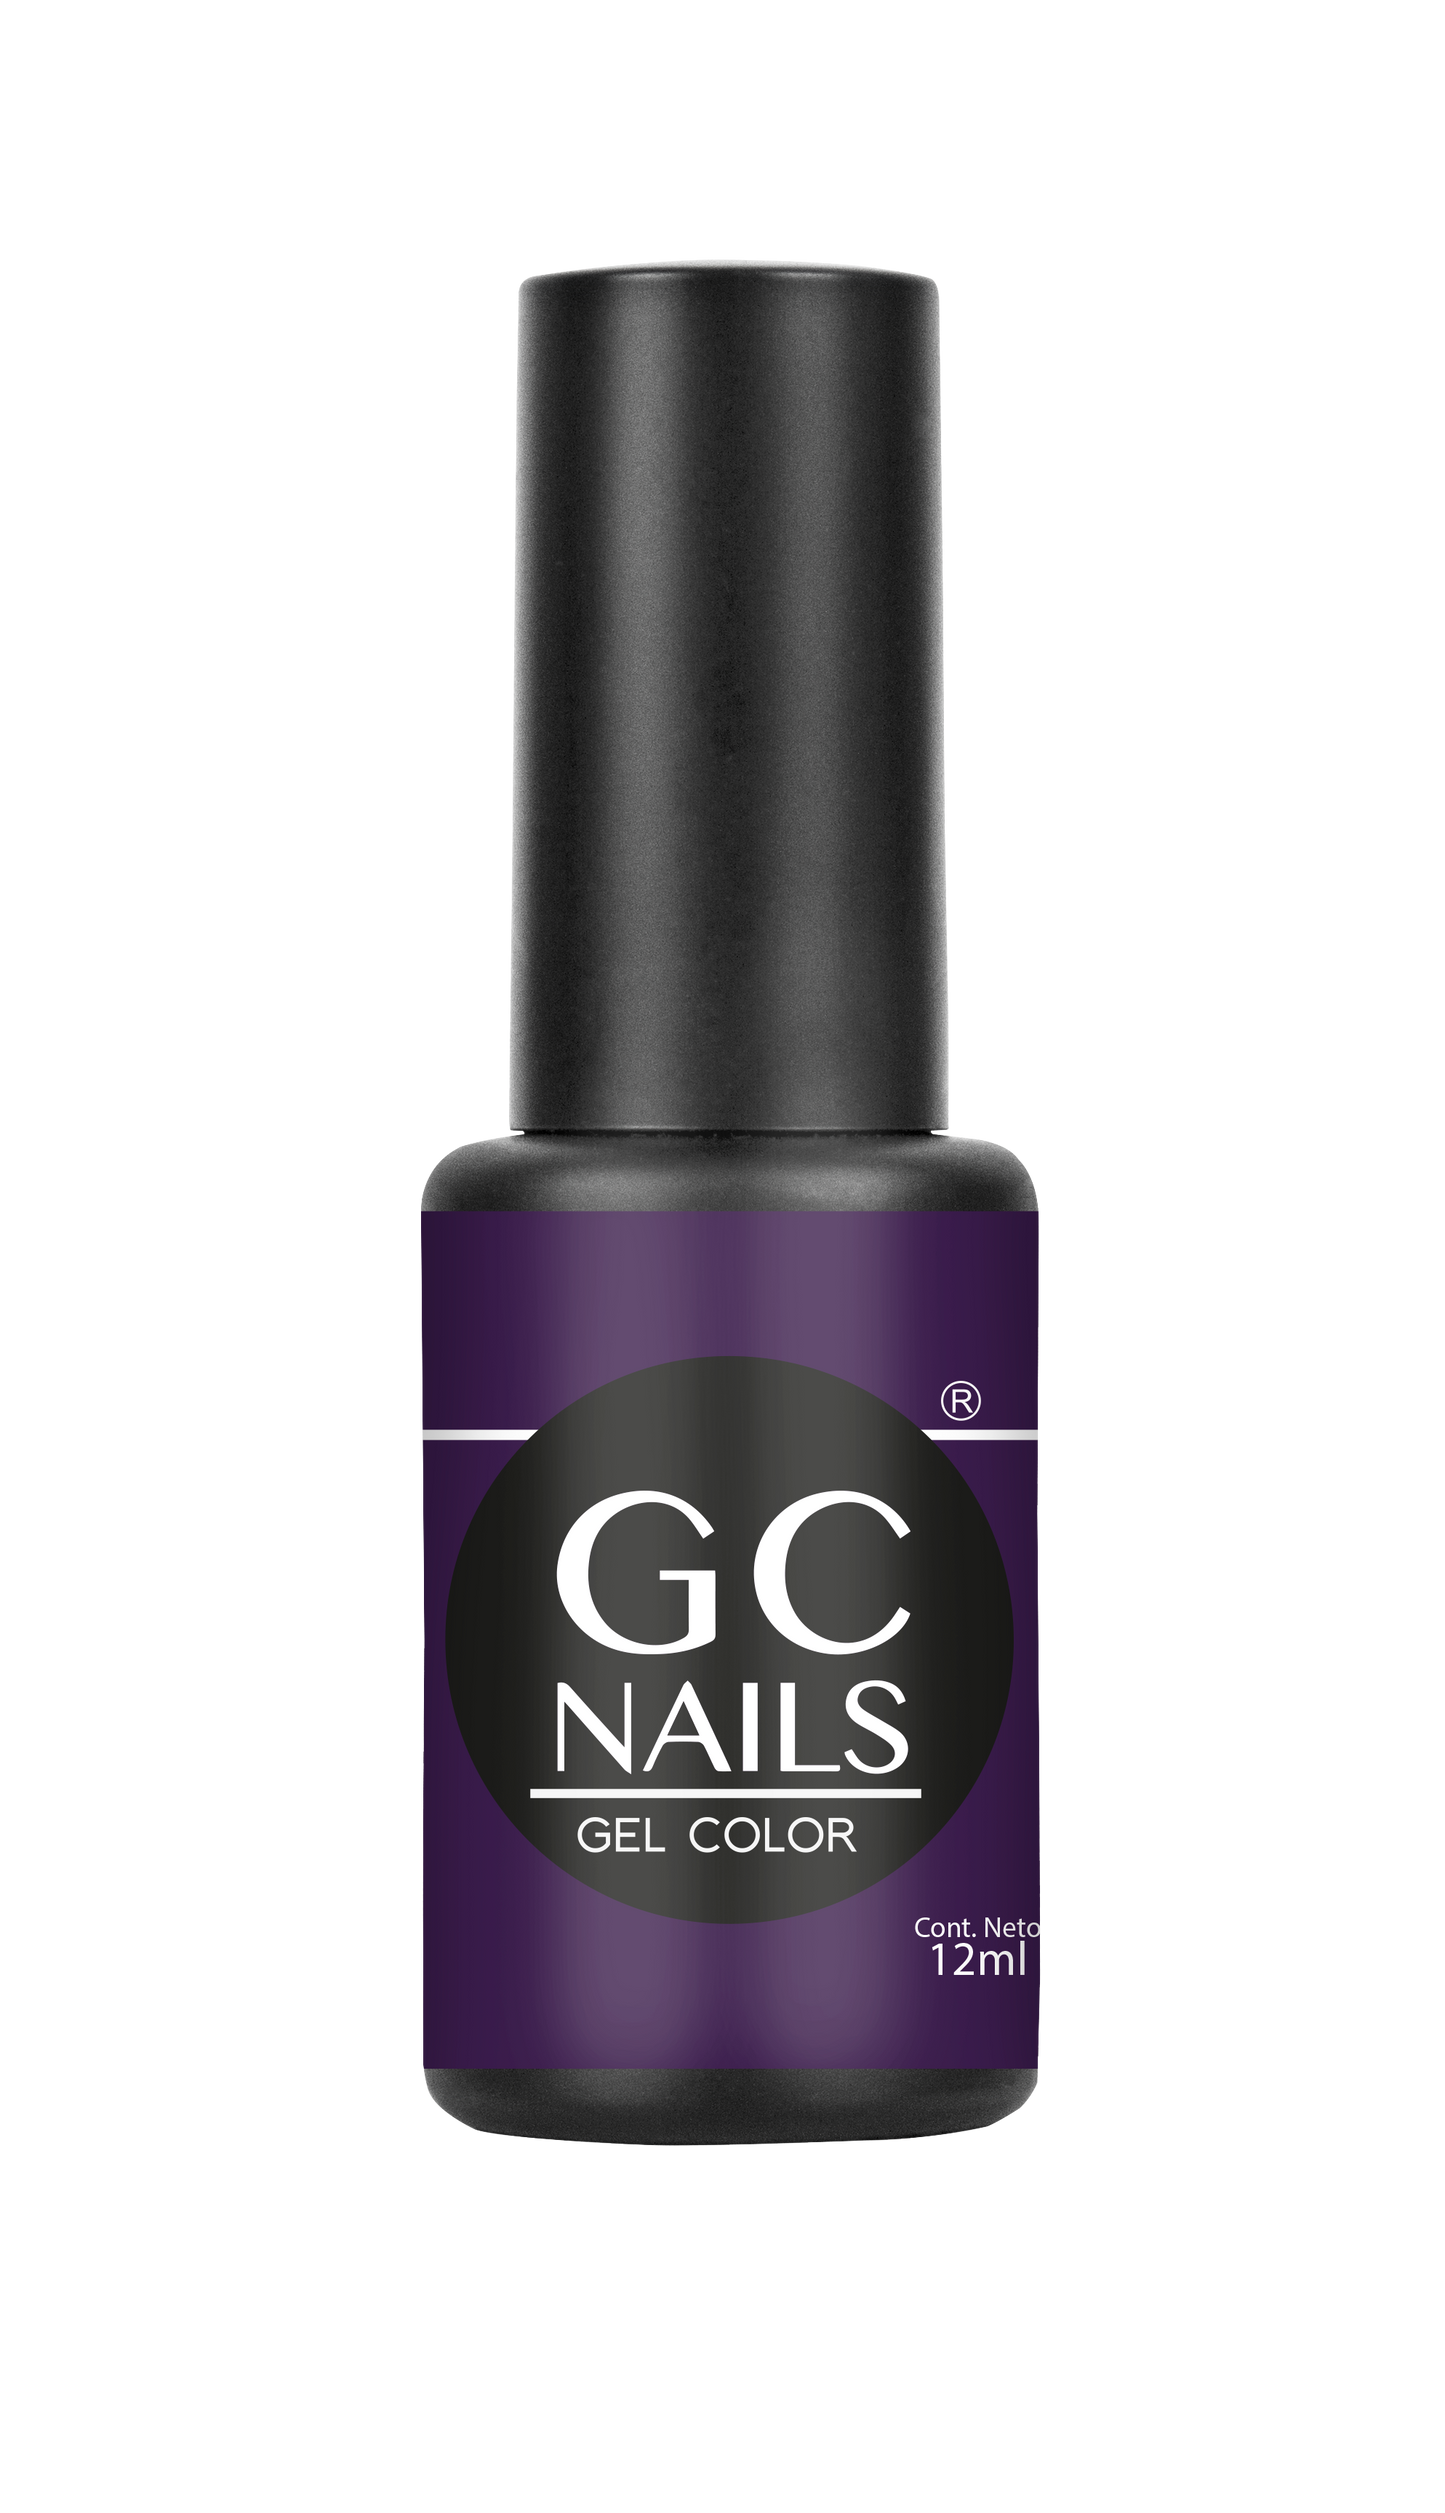 GC nails bel-color 12ml DUQUESA 62